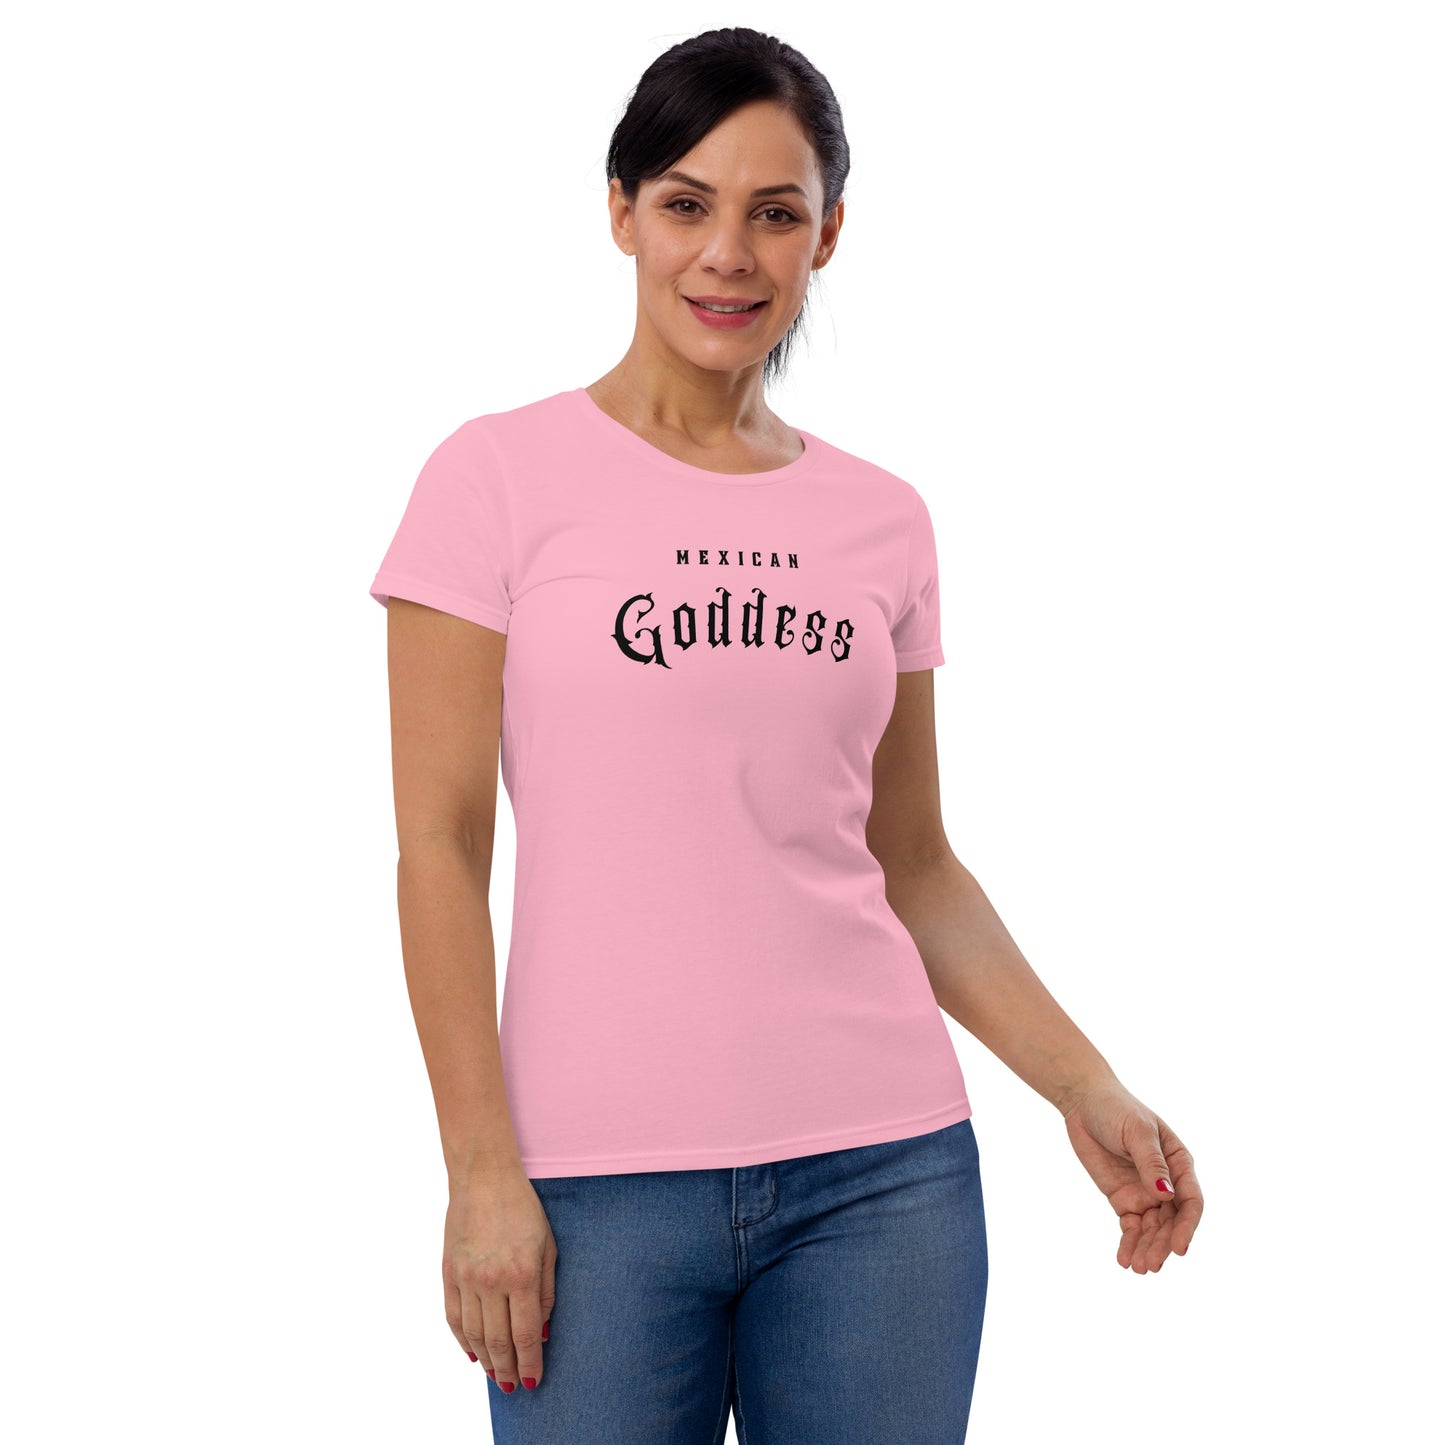 "Mexican Goddess" Women's short sleeve t-shirt